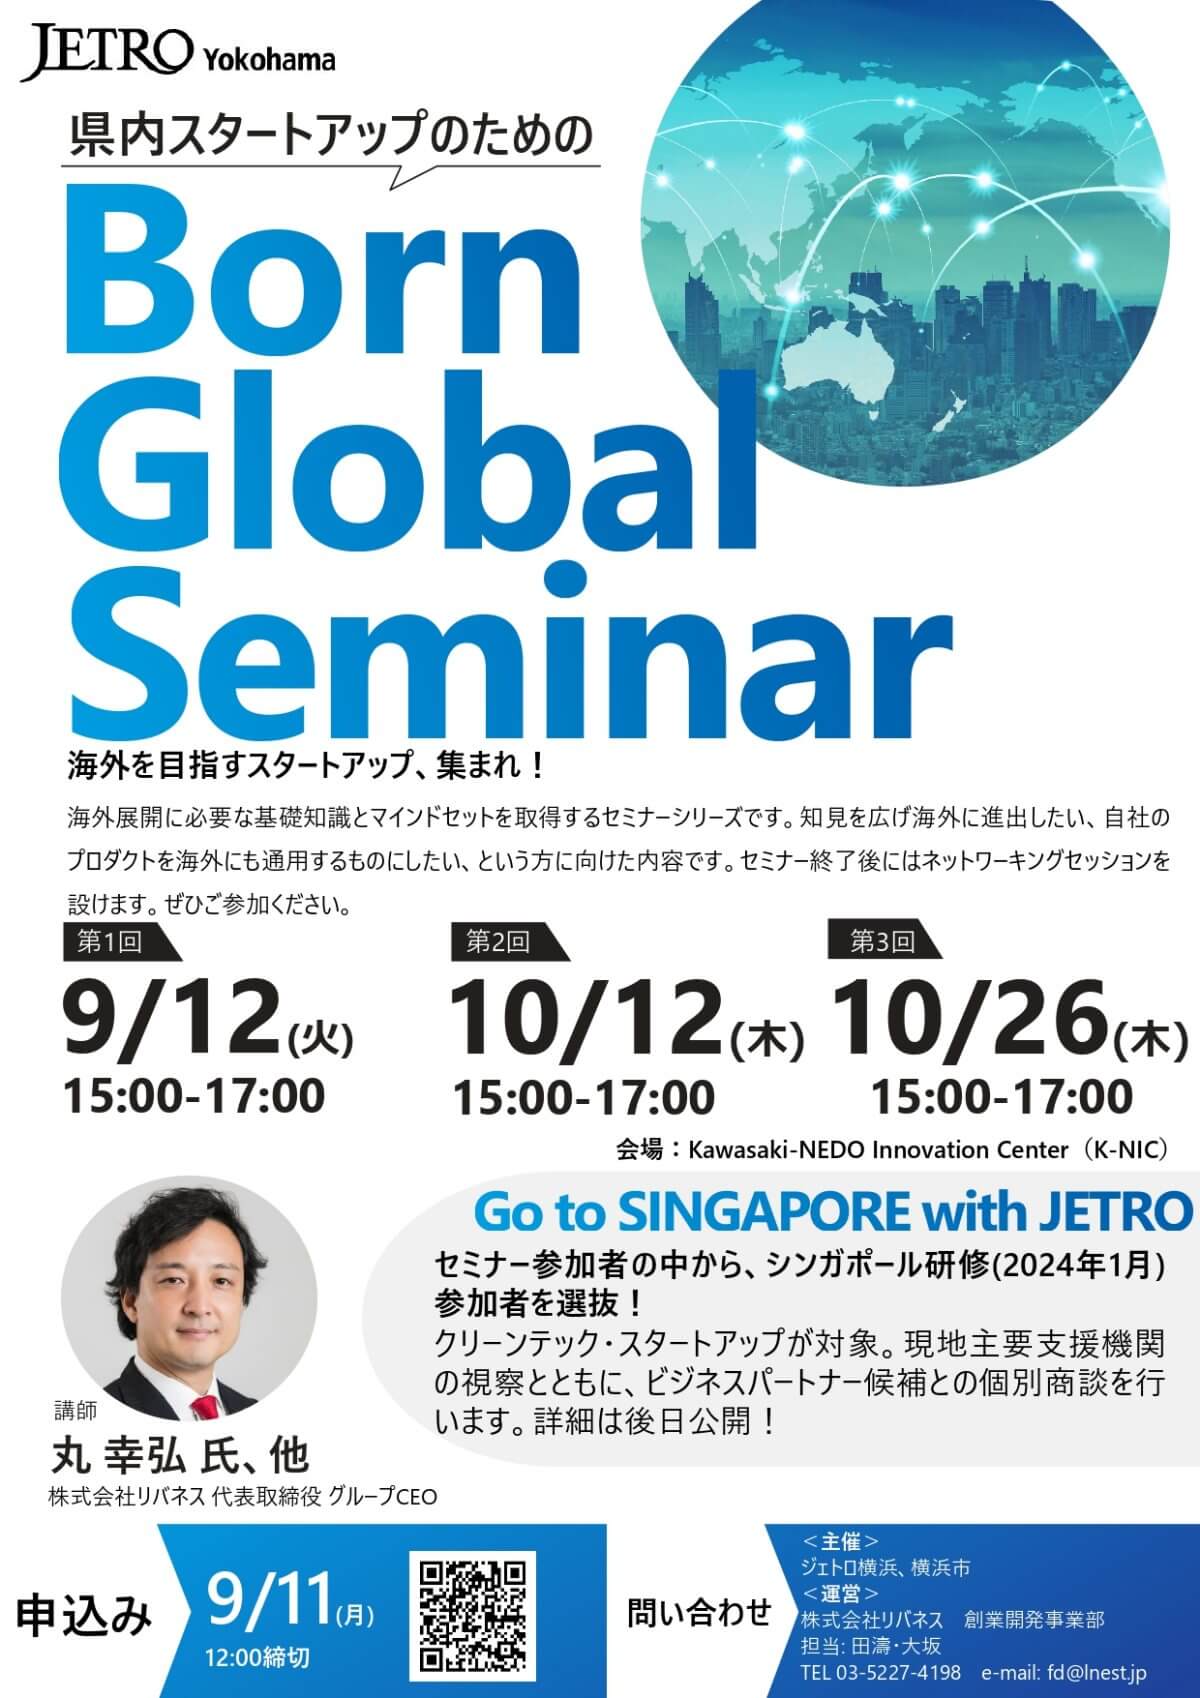 【9/12, 10/12, 26】スタートアップのためのBorn Global Seminar